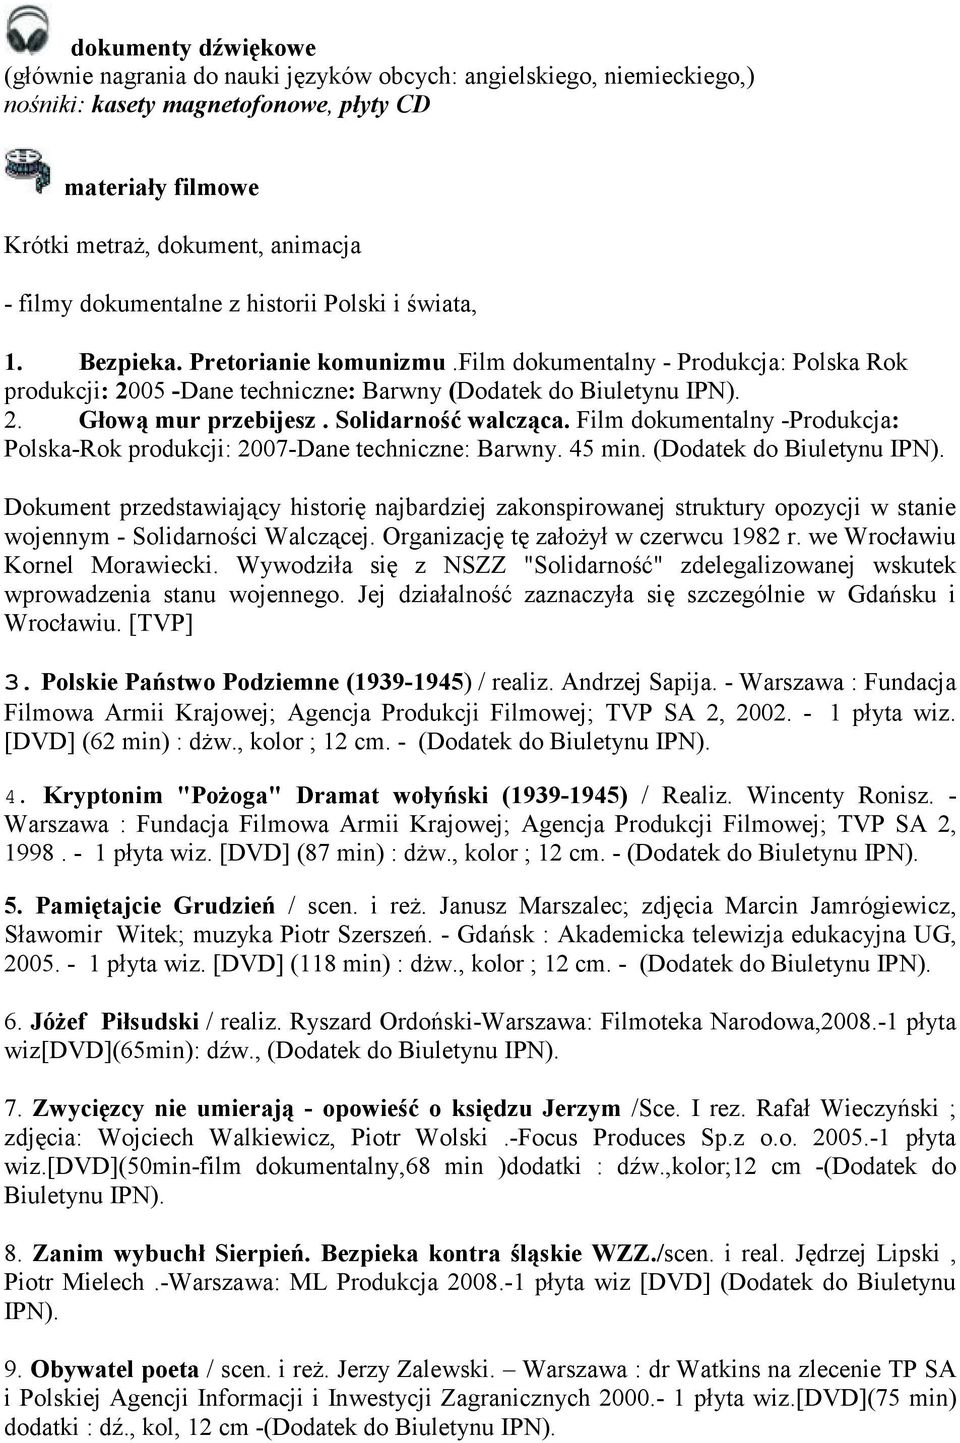 Solidarność walcząca. Film dokumentalny -Produkcja: Polska-Rok produkcji: 2007-Dane techniczne: Barwny. 45 min. (Dodatek do Biuletynu IPN).